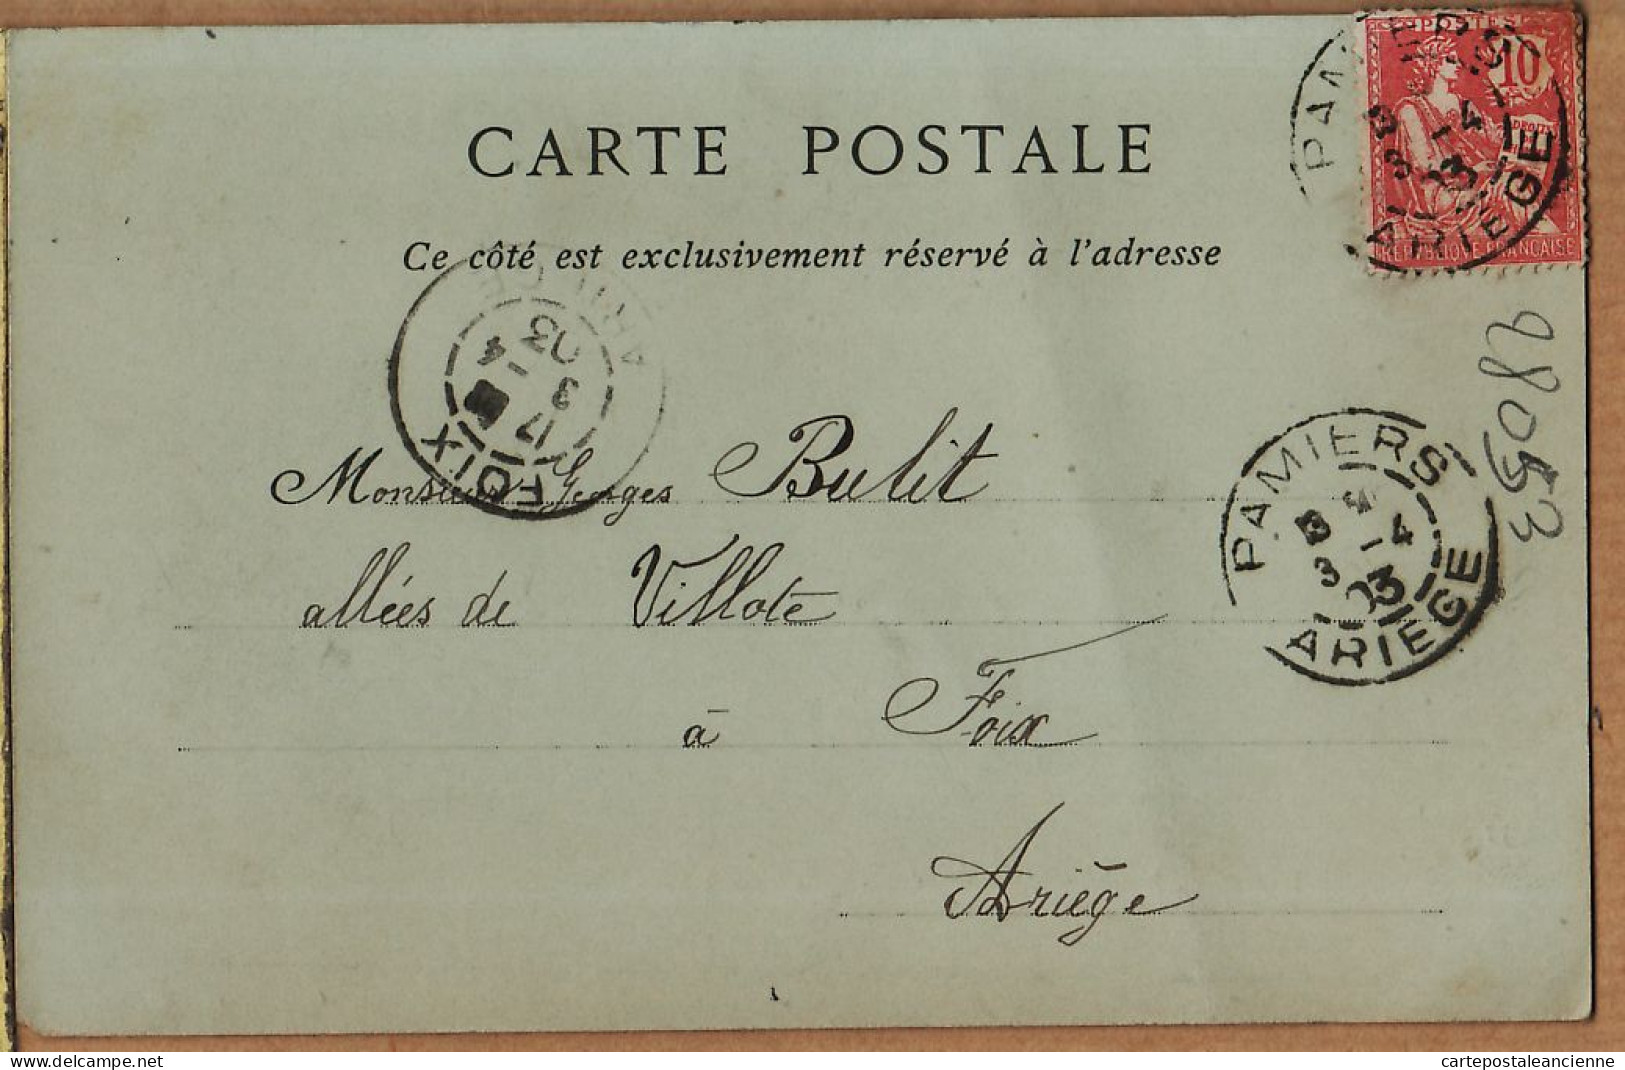 26386 / ⭐ ORAN Algérie Le LYCEE 03.04.1903 à Georges BULIT Allées Villote Foix NEURDEIN 77 - Oran